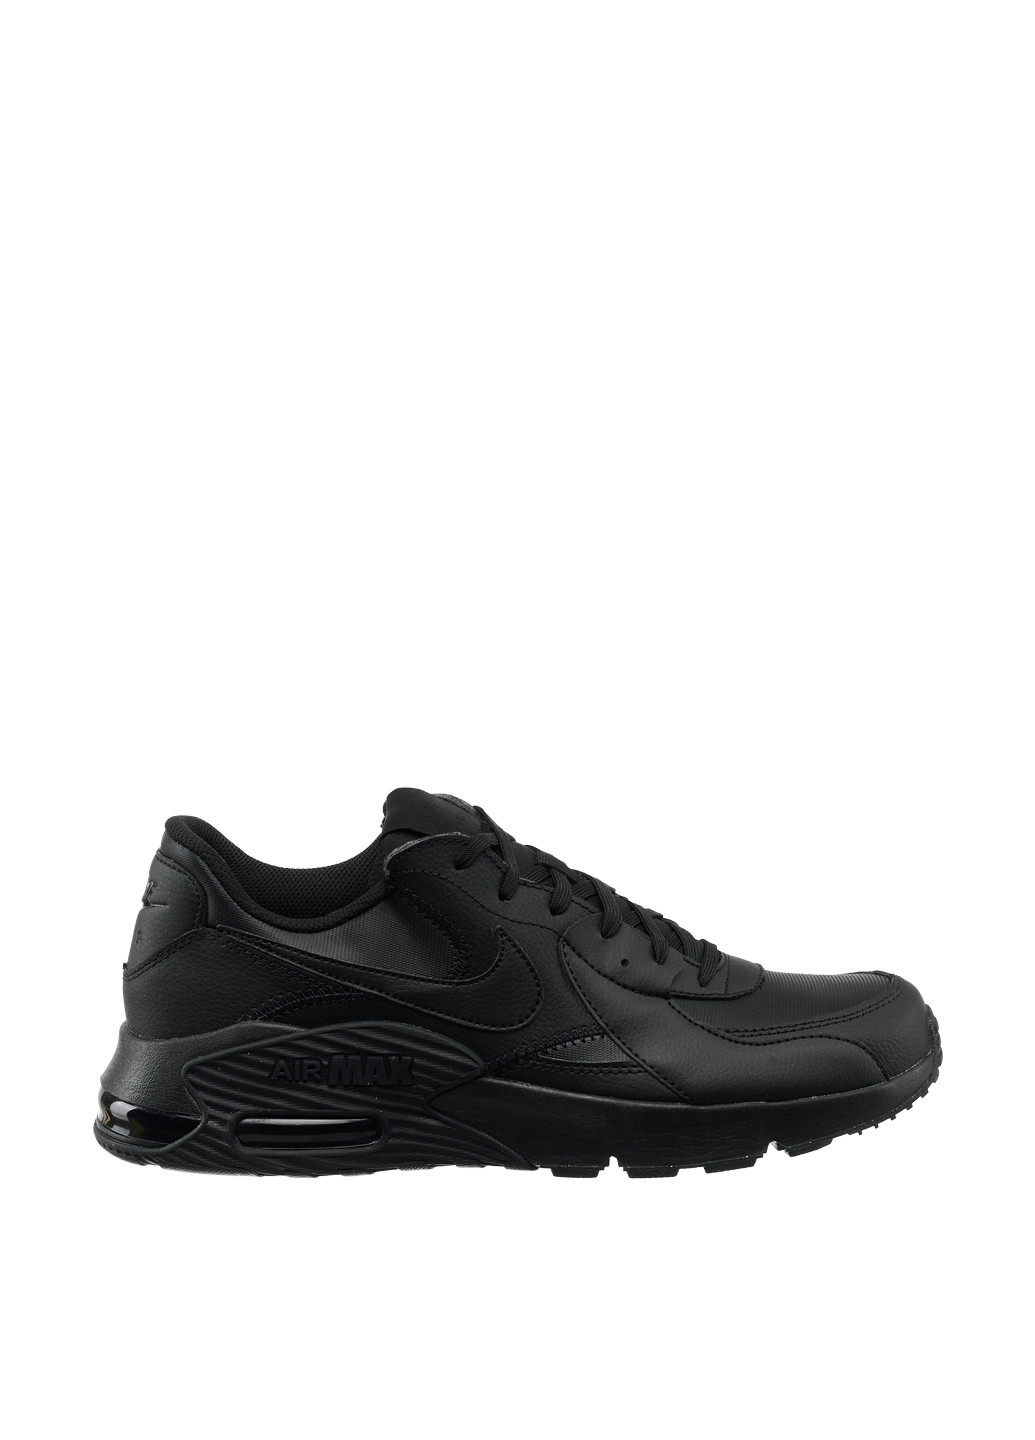 Черные демисезонные кроссовки db2839-001_2024 Nike Air Max Excee